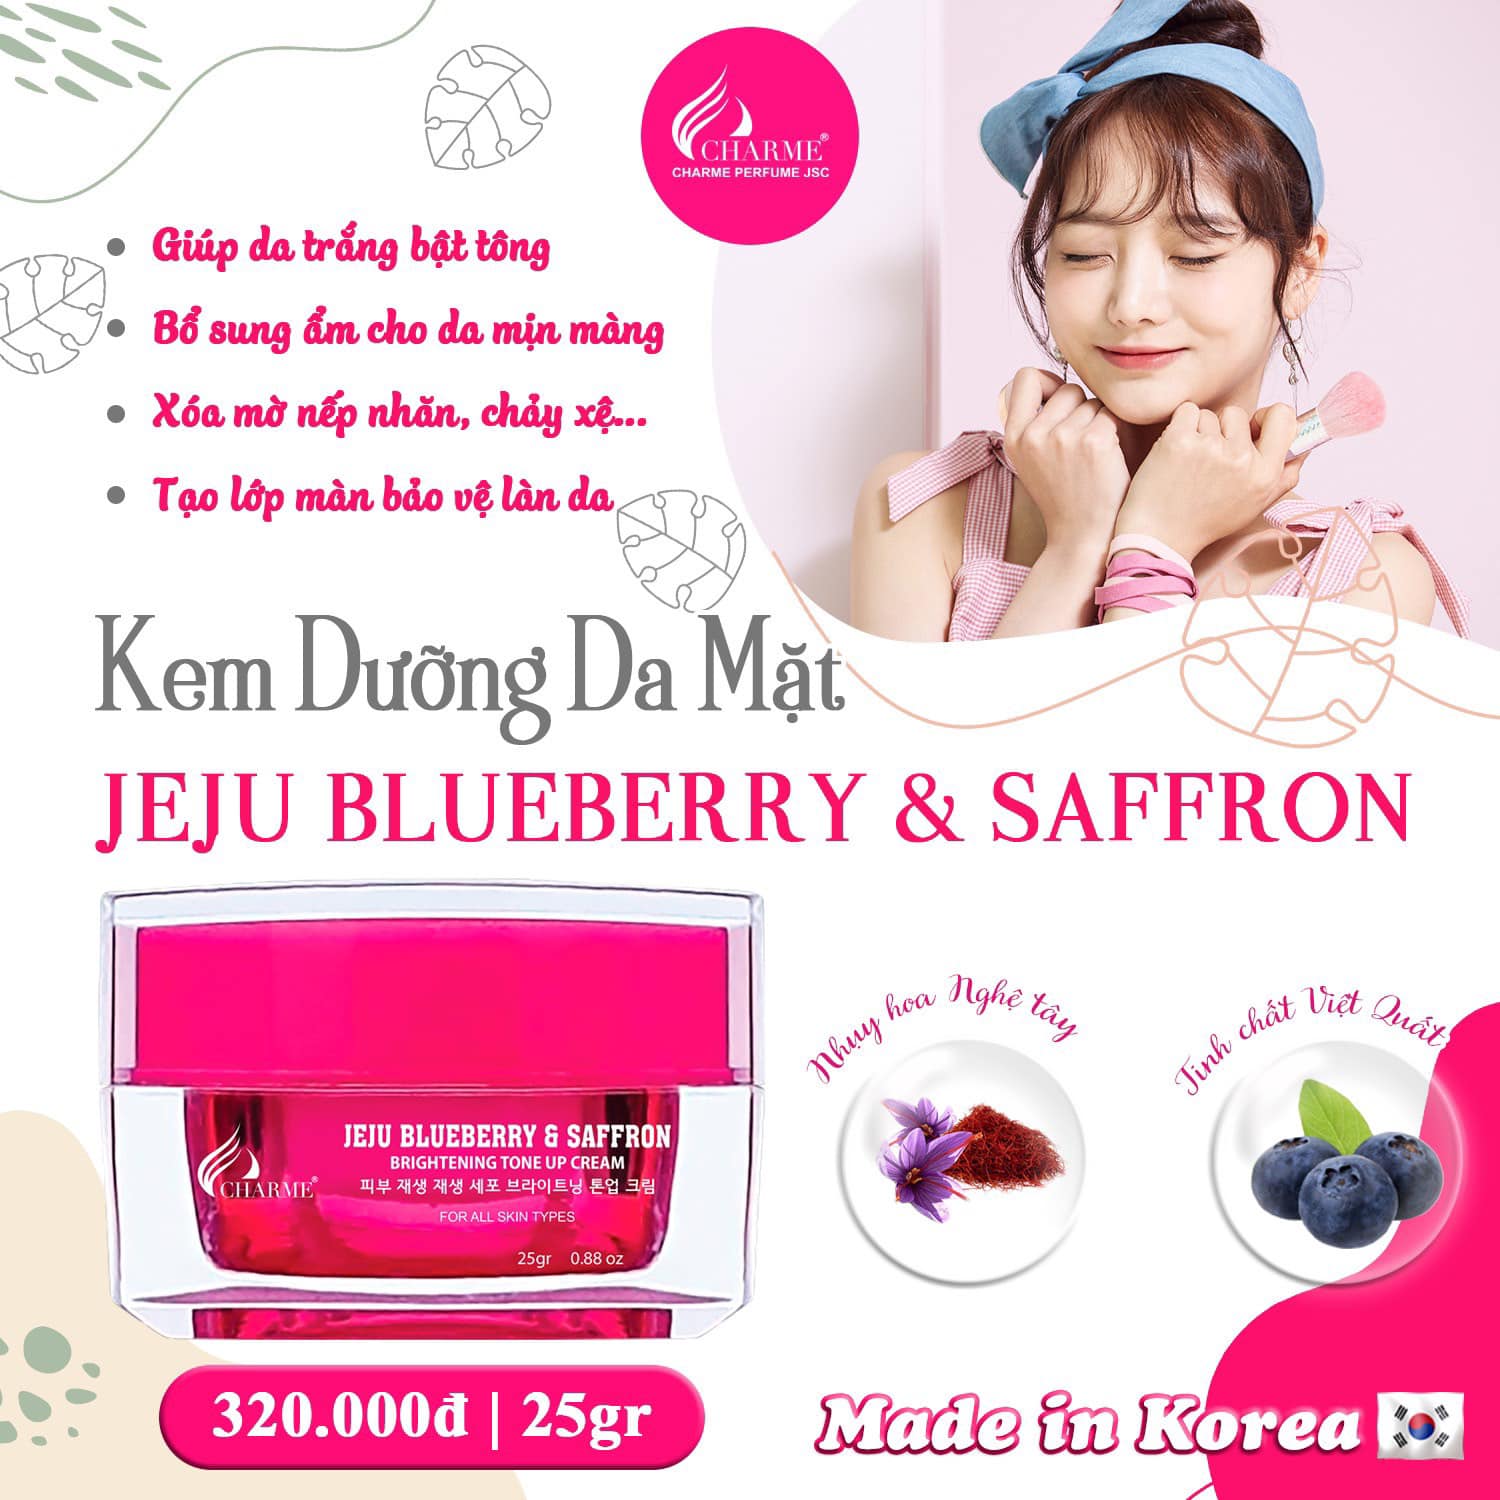 Kem Face Hàn Quốc Dưỡng Trắng Charme Jeju Blueberry & Saffron - 8809273480234